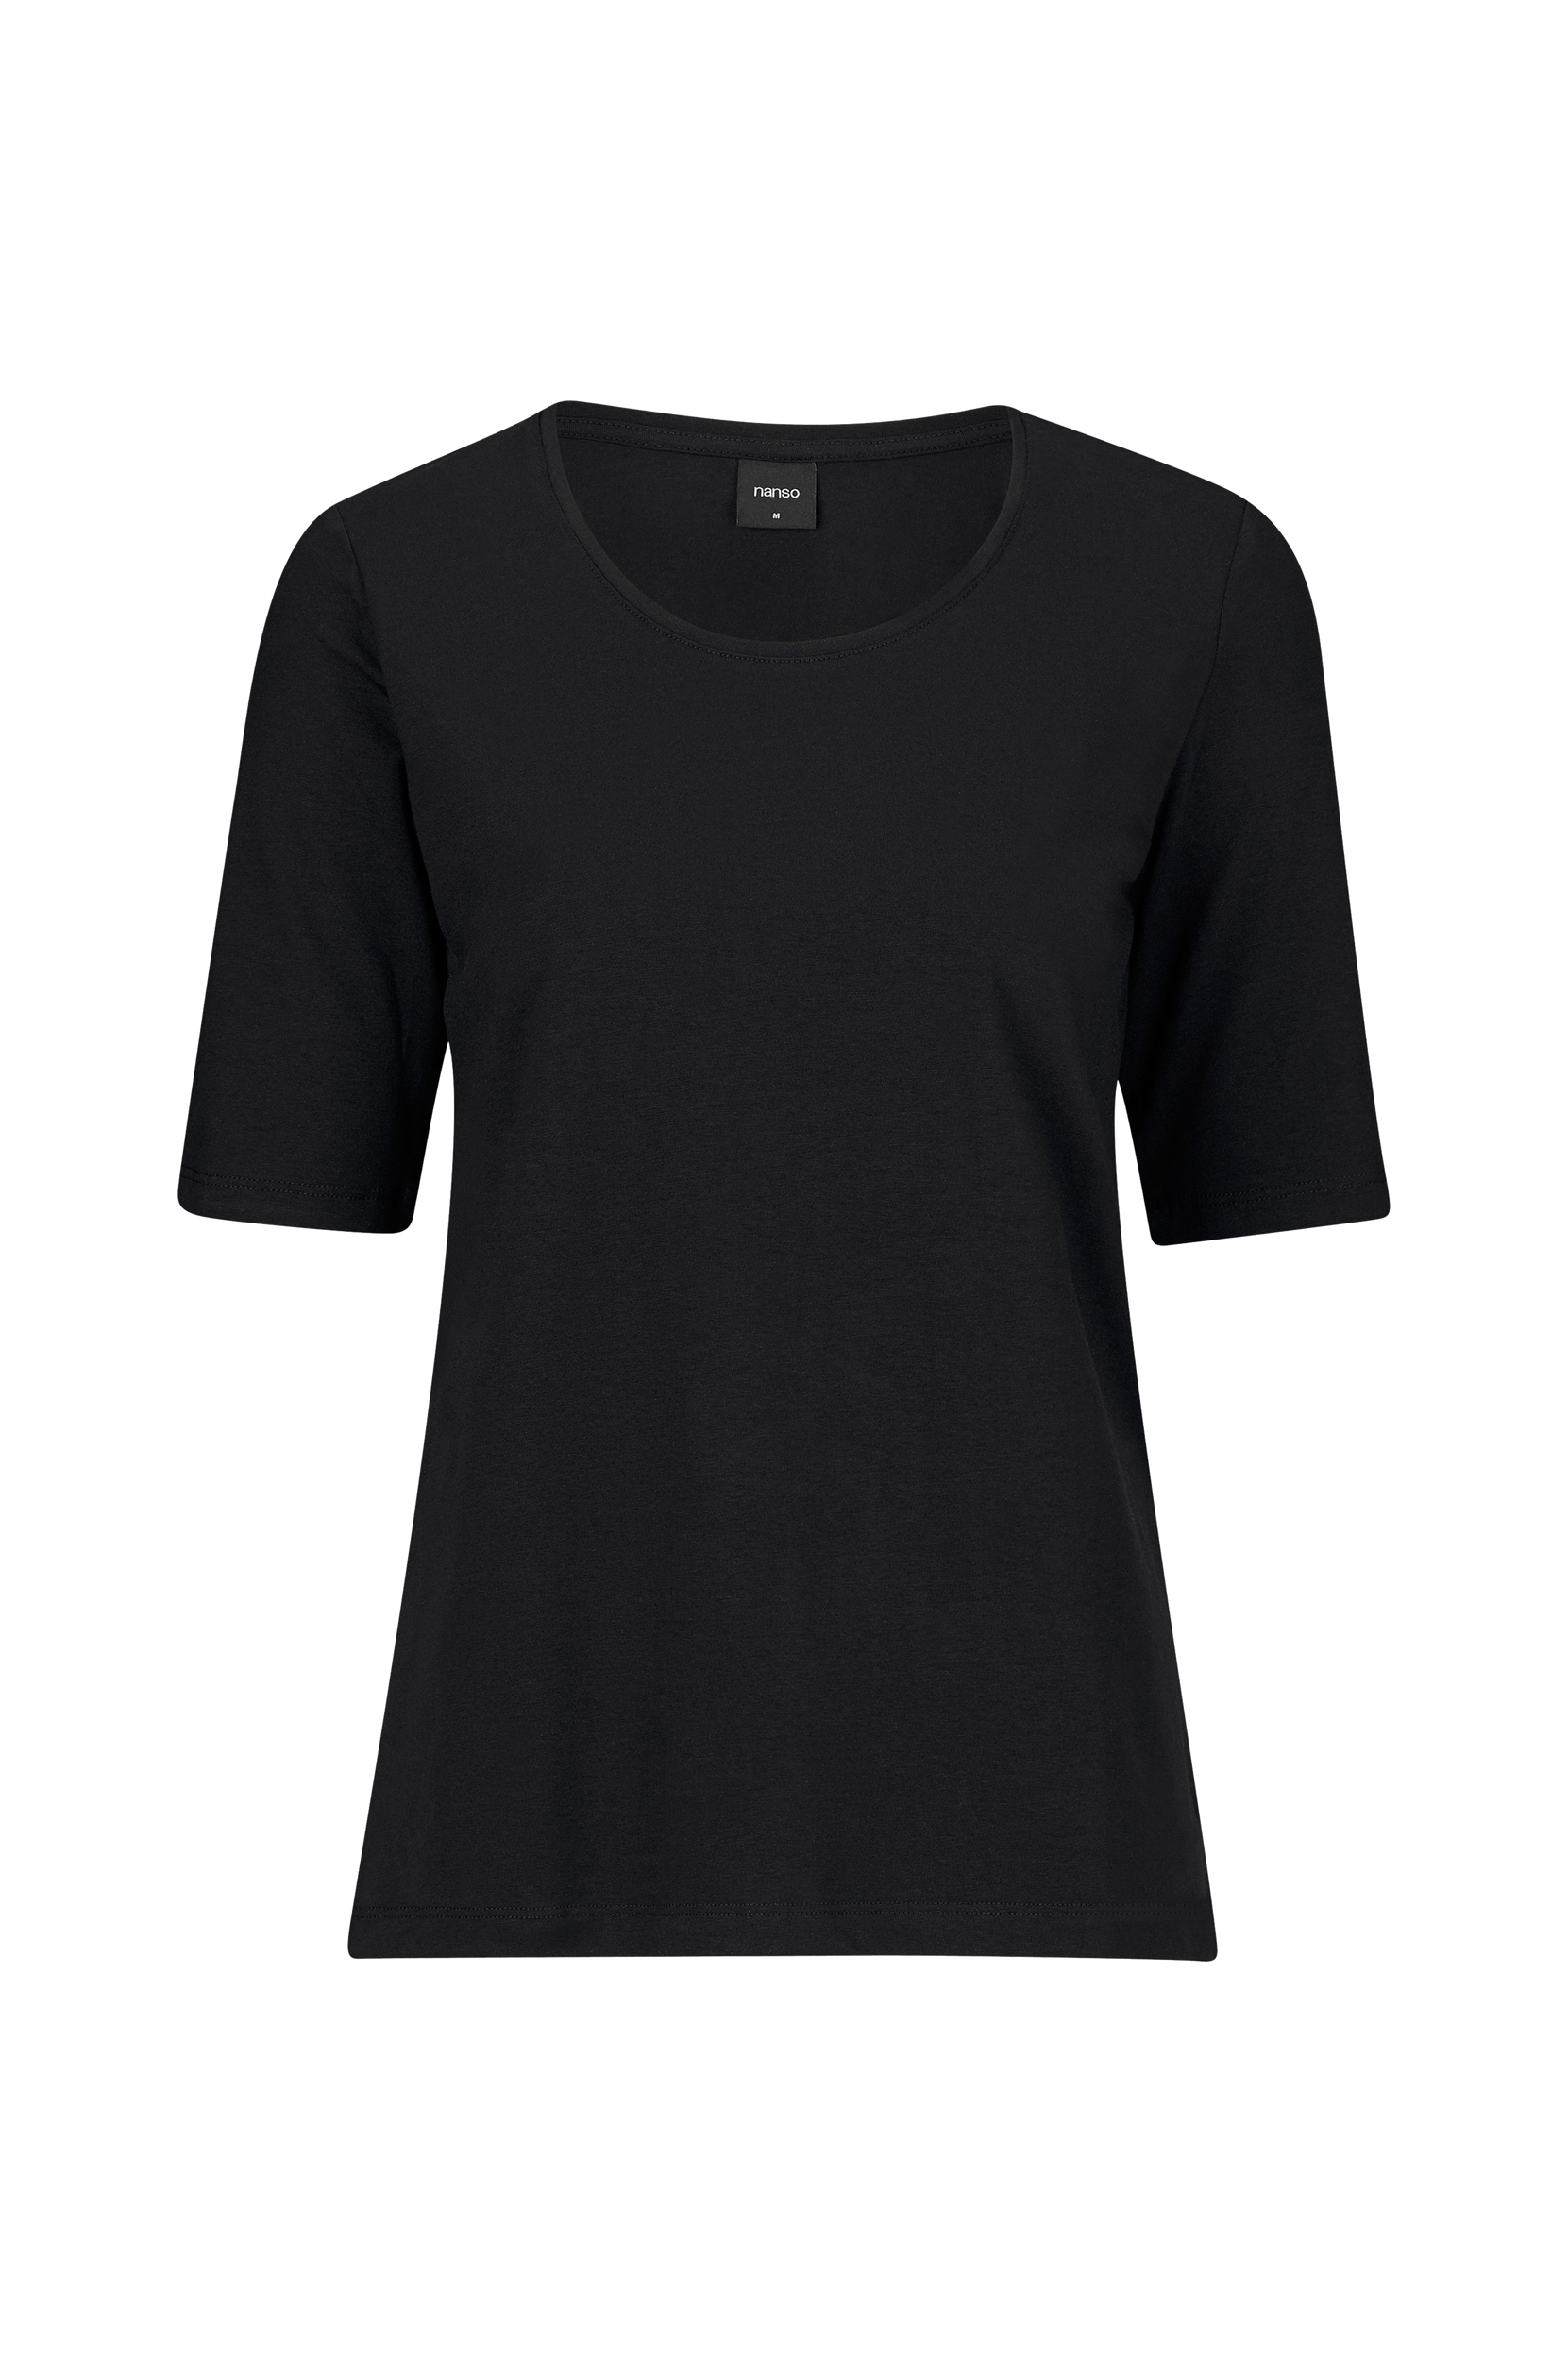 Nanso - Top Ladies T-shirt Basic - Sort - 36